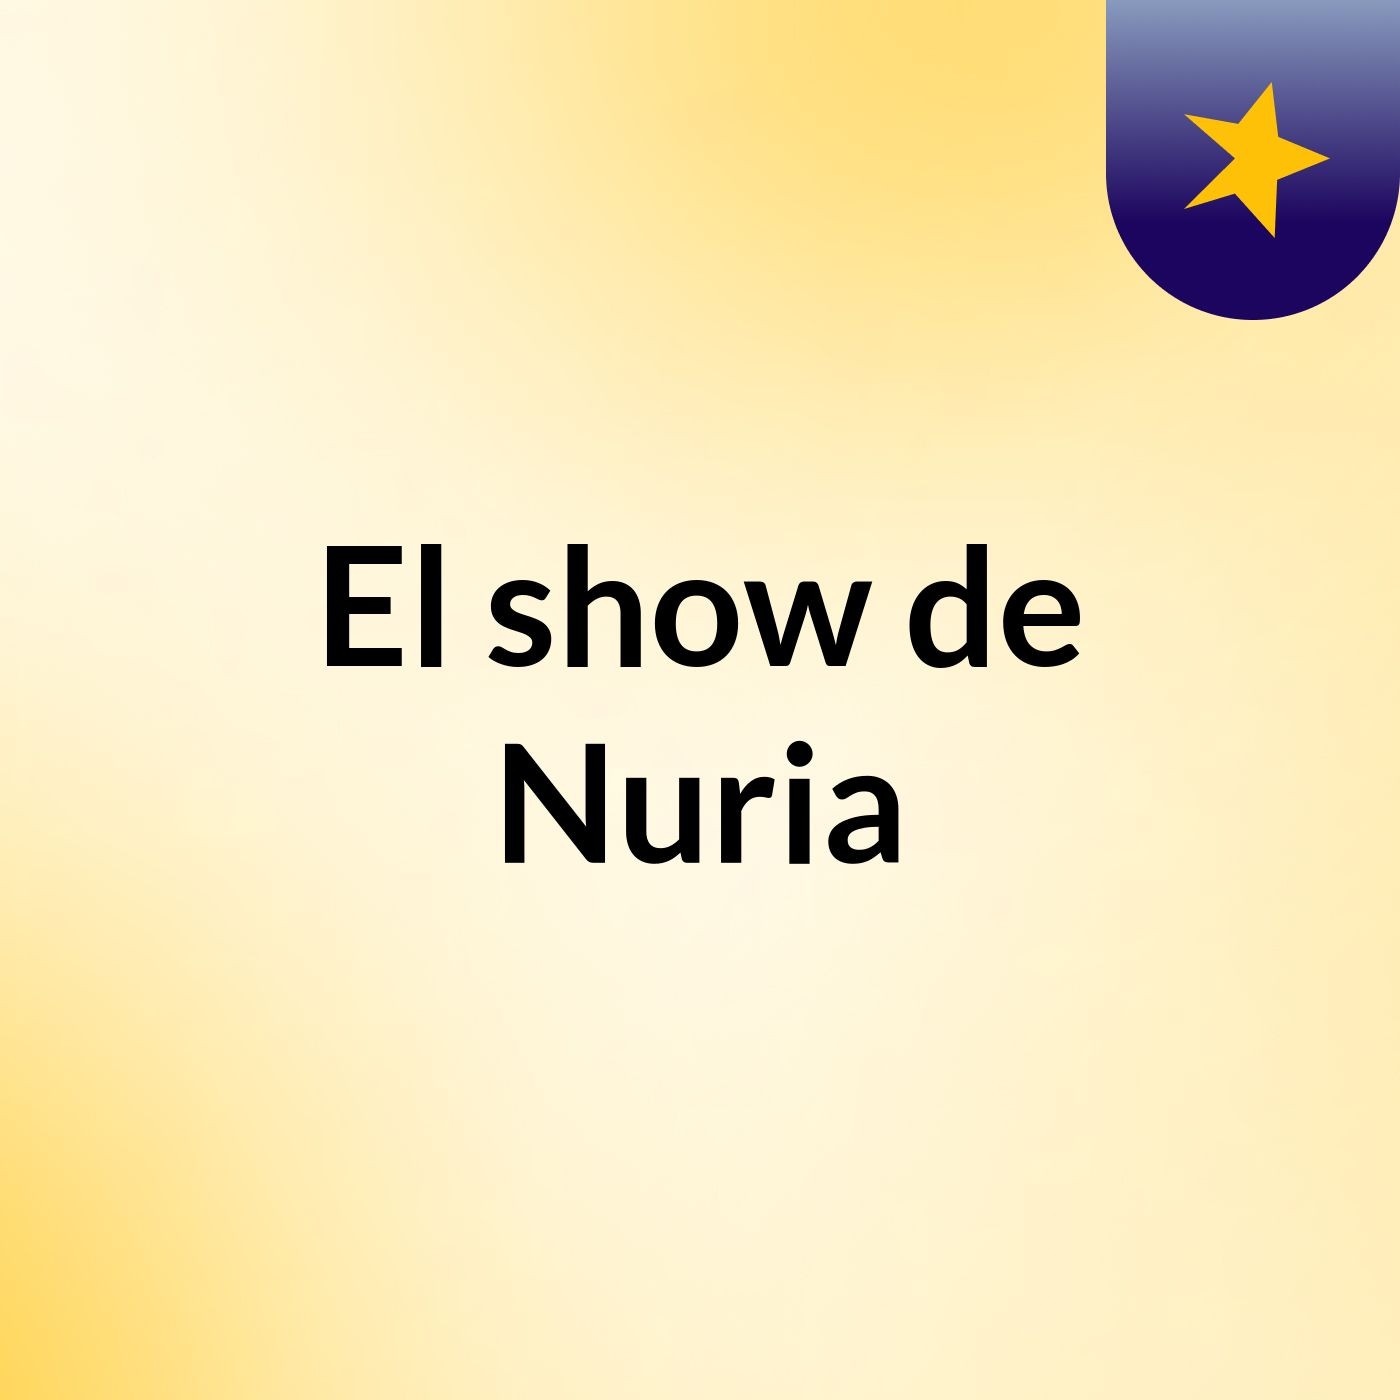 El show de Nuria